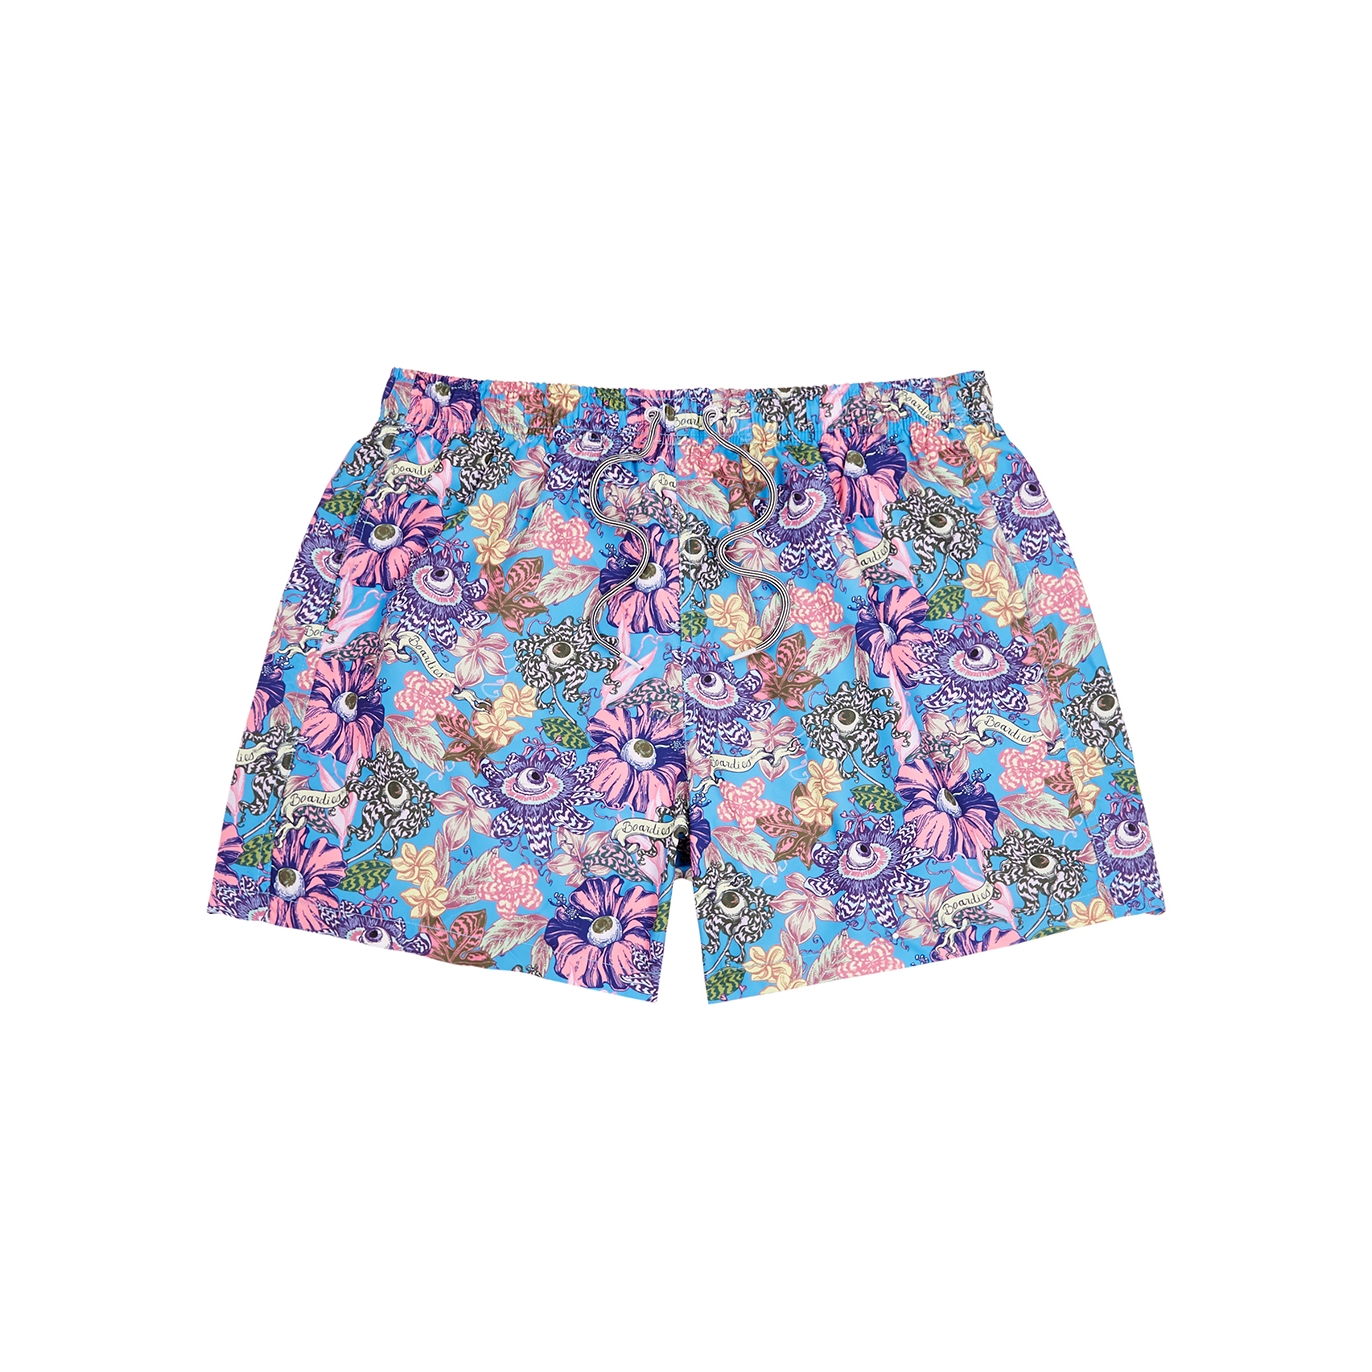 Boardies Tropical Eyeballs Printed Shell Swim Shorts - Blue